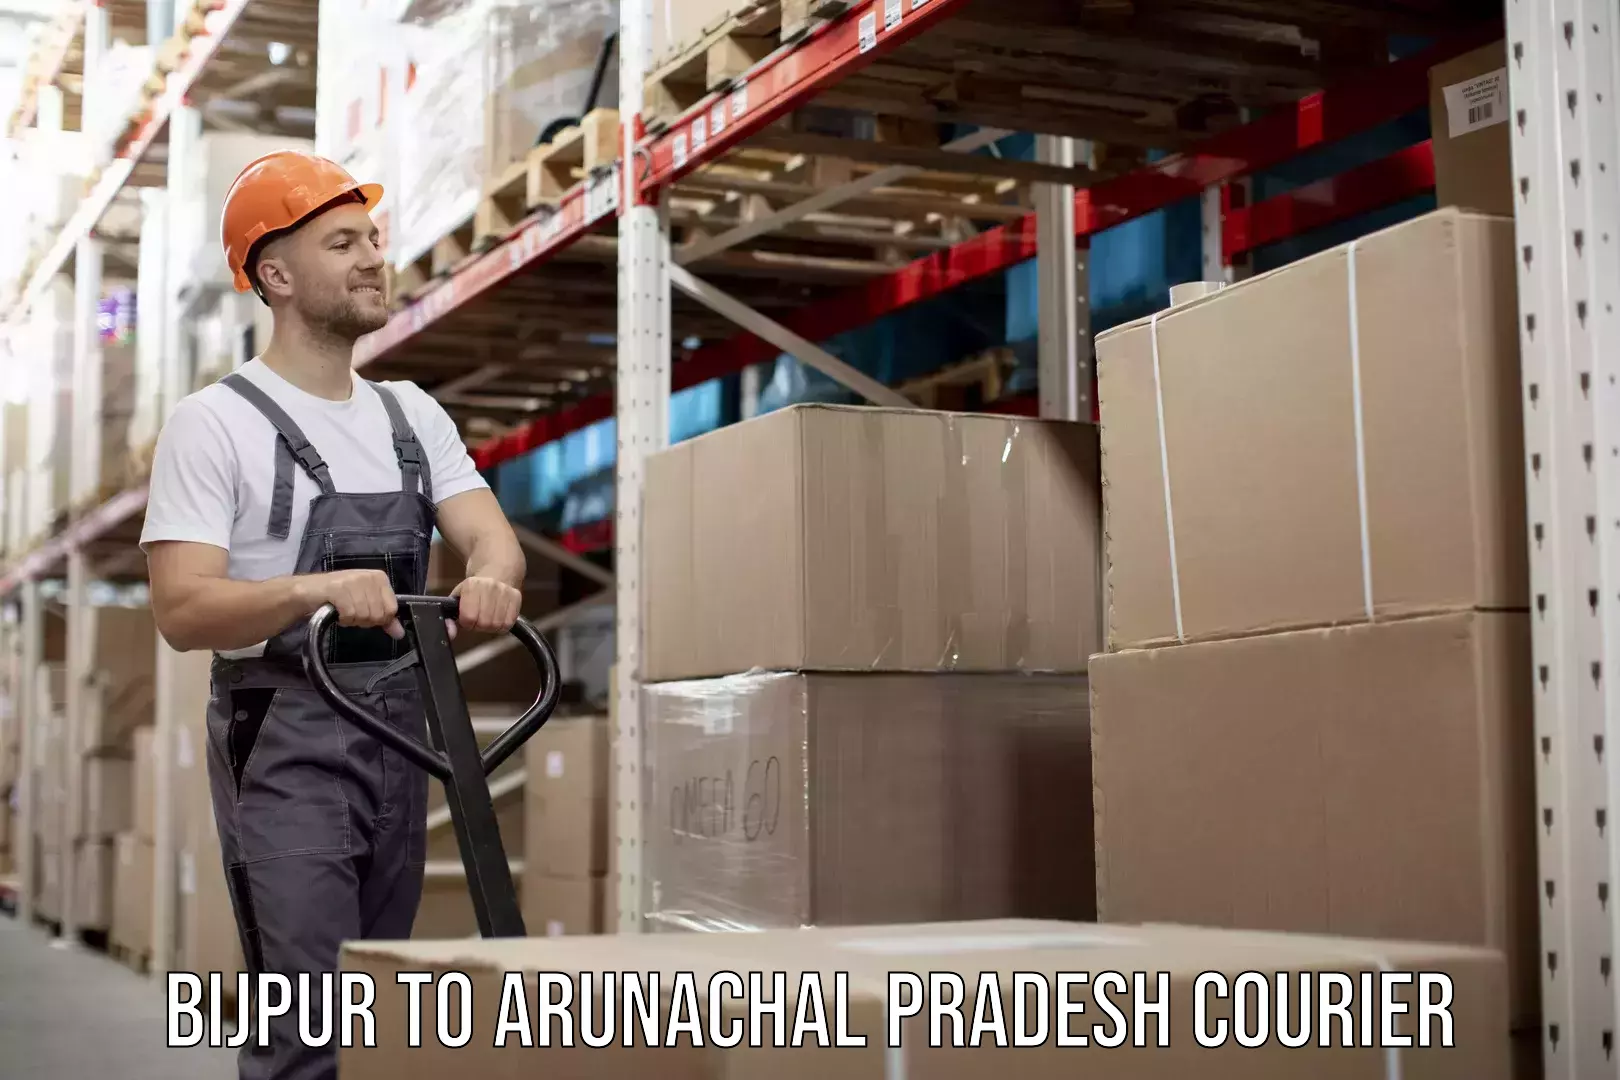 Professional courier services Bijpur to Arunachal Pradesh